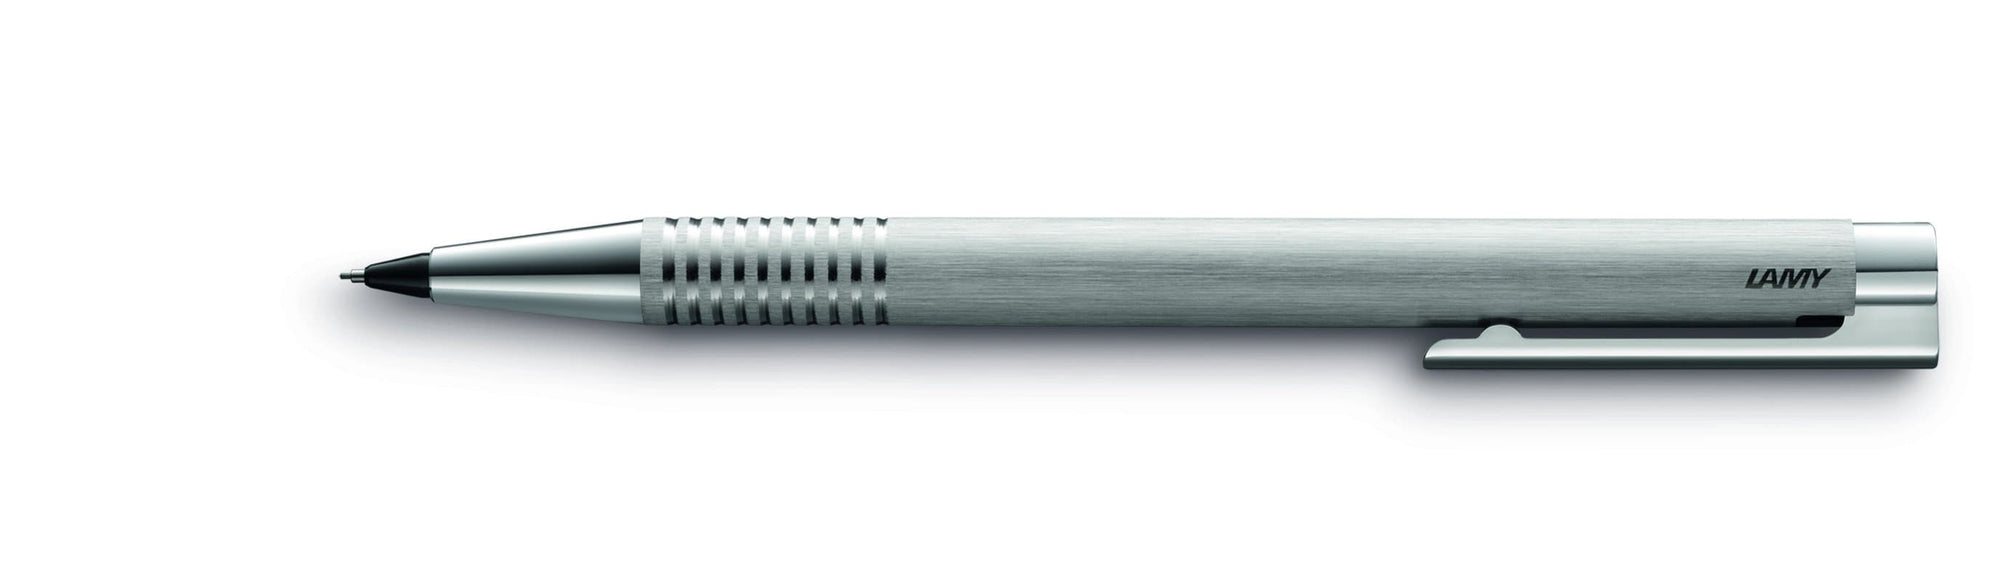 Logo Brushed Steel Mechanical Pencil - Blesket Canada